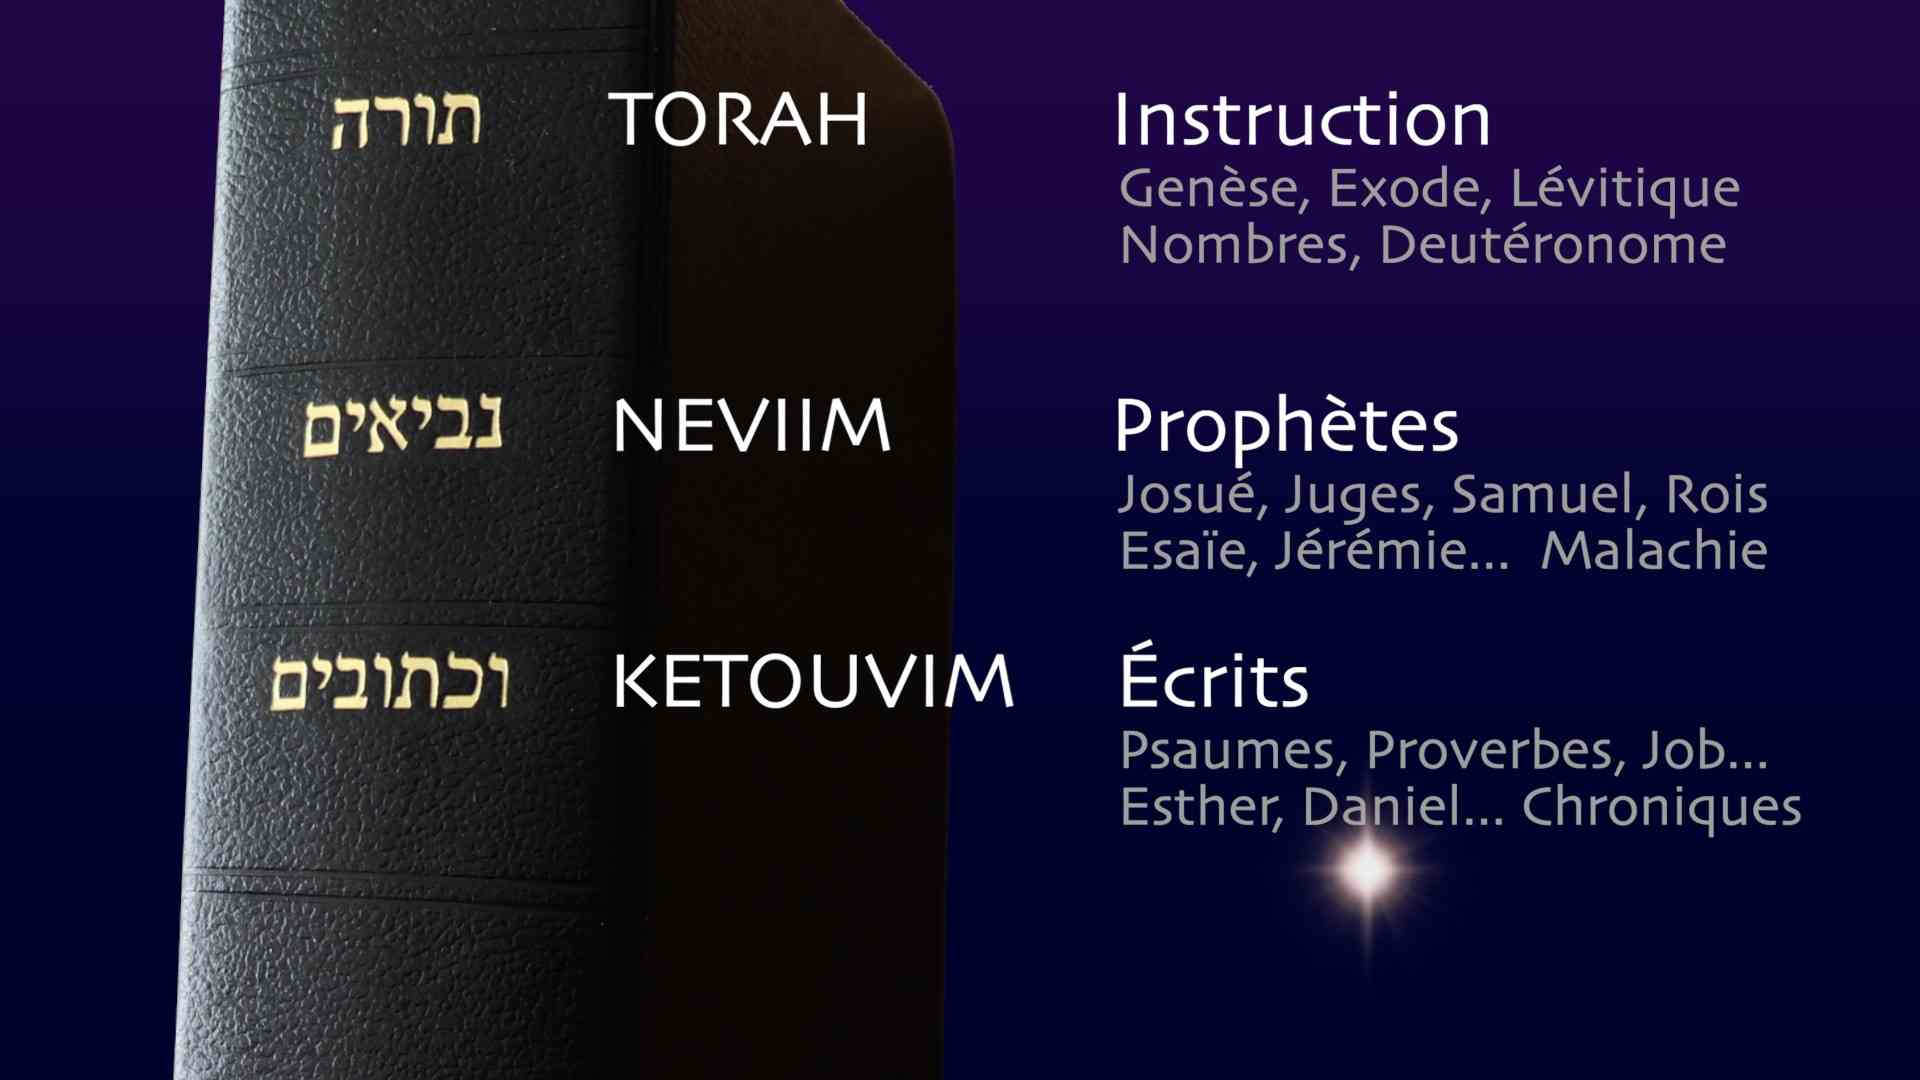 Les 3 sections de la Bible hébraïque